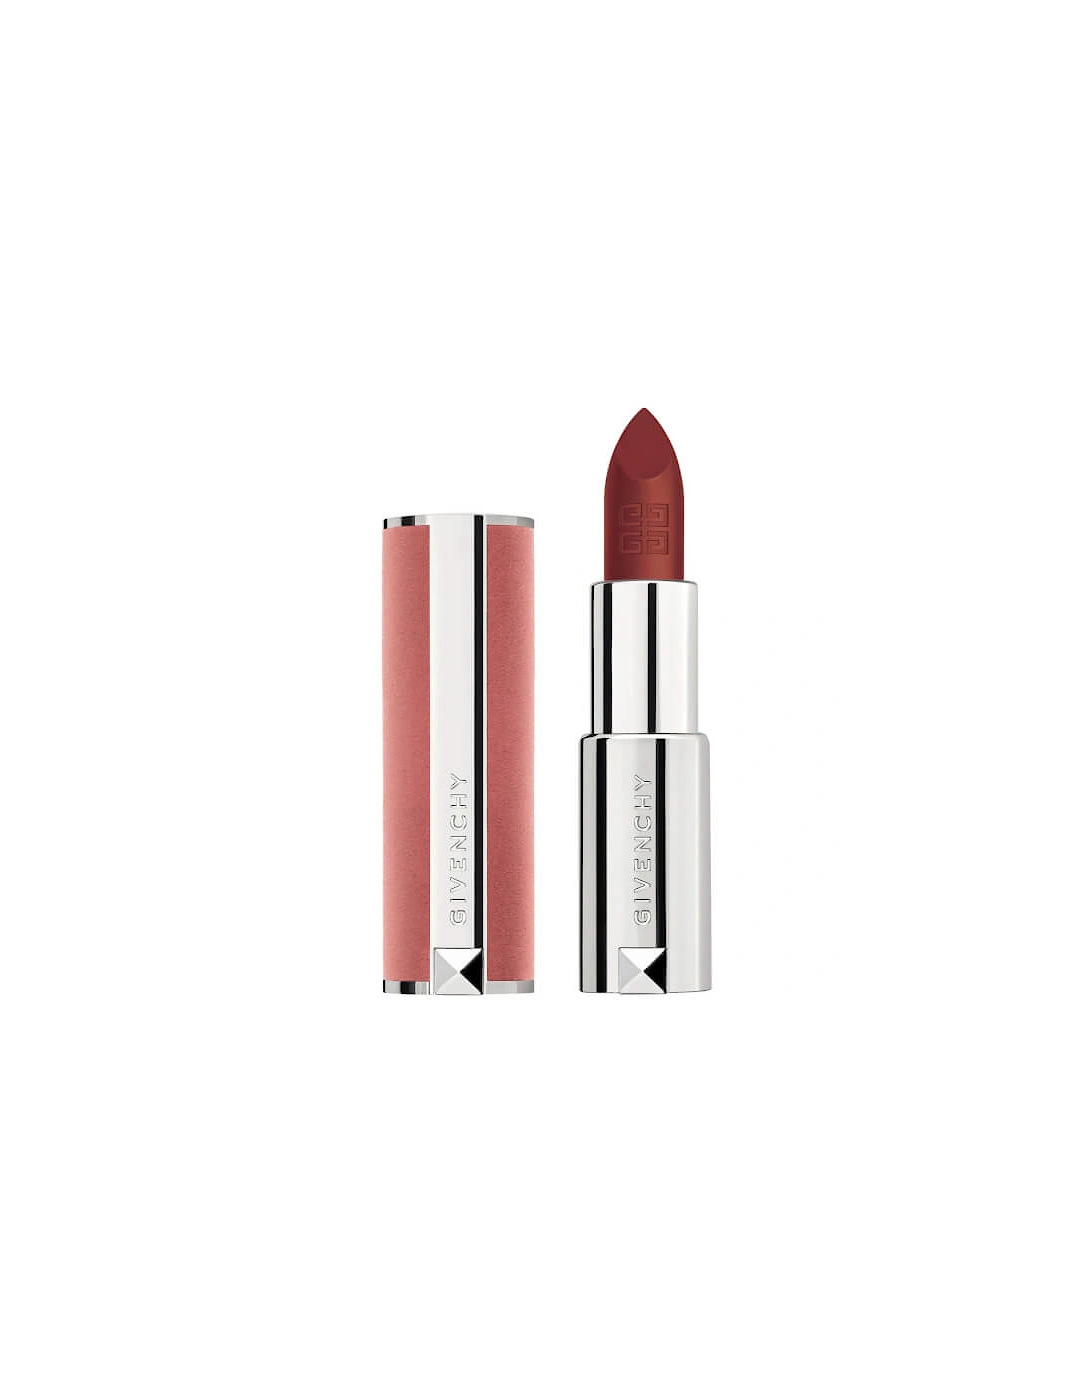 Le Rouge Sheer Velvet Lipstick - N50 Brun Acajou, 2 of 1